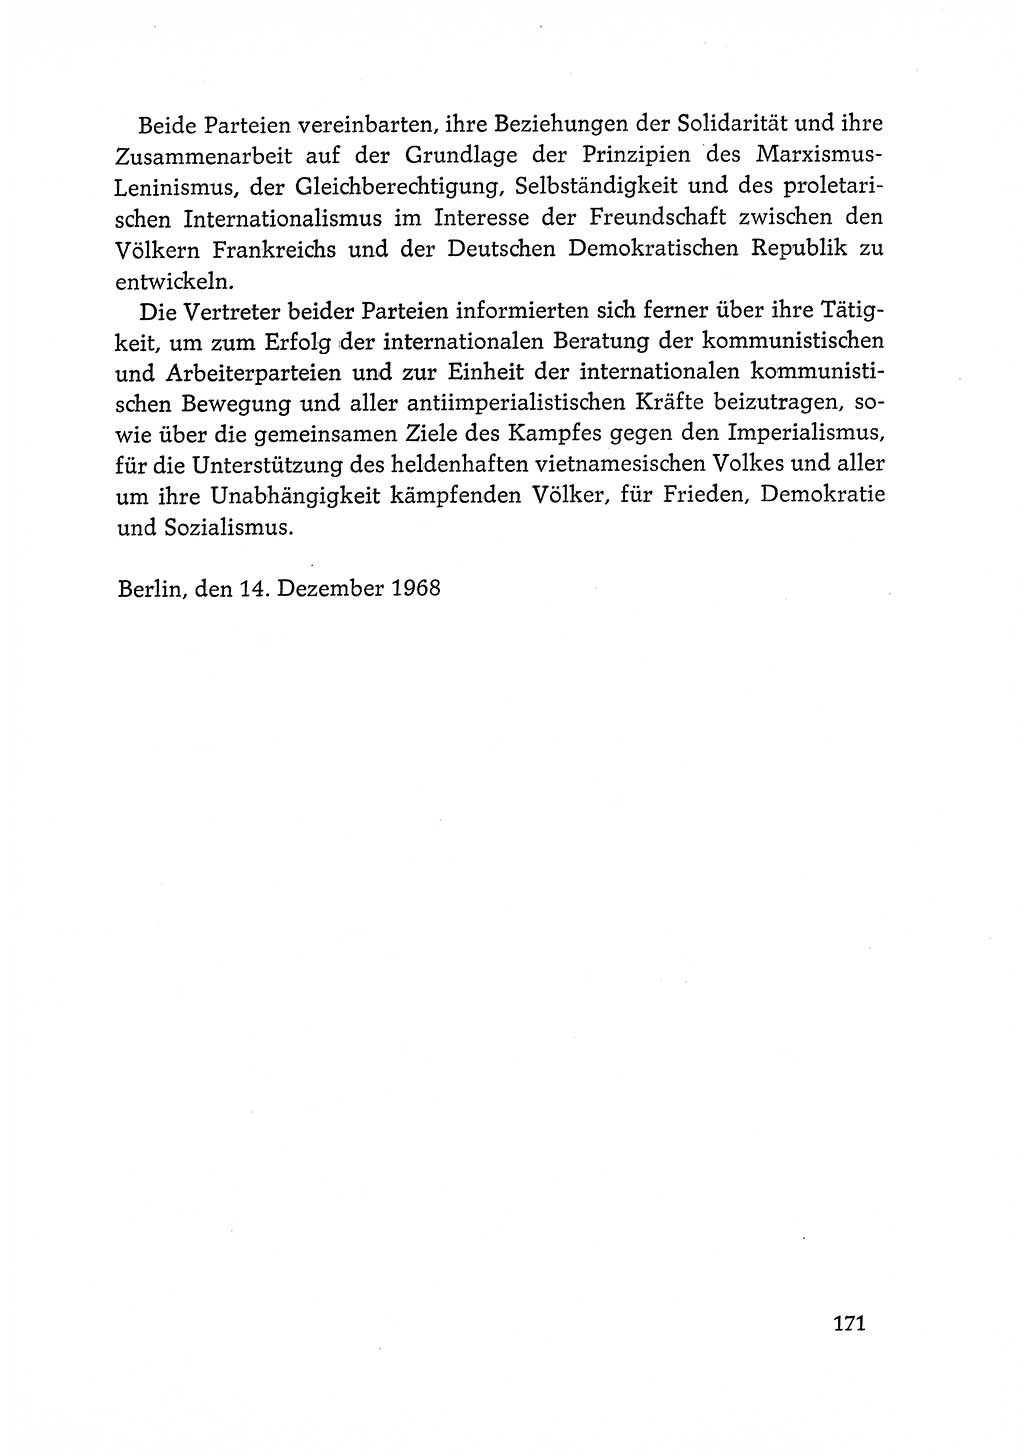 Dokumente der Sozialistischen Einheitspartei Deutschlands (SED) [Deutsche Demokratische Republik (DDR)] 1968-1969, Seite 171 (Dok. SED DDR 1968-1969, S. 171)